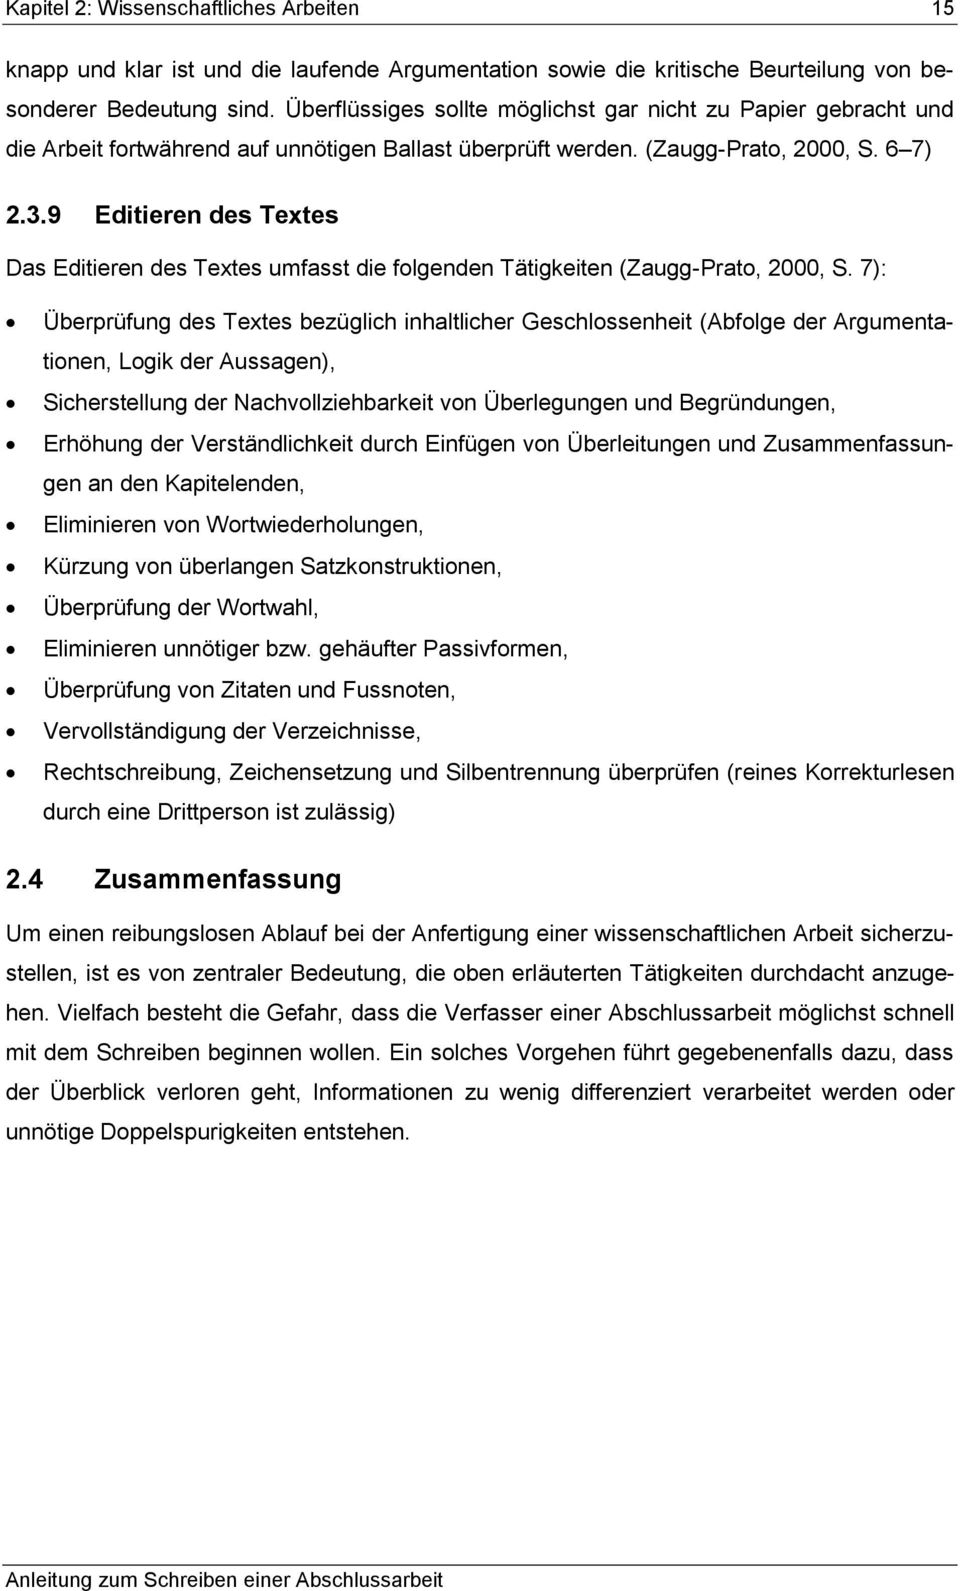 9 Editieren des Textes Das Editieren des Textes umfasst die folgenden Tätigkeiten (Zaugg-Prato, 2000, S.